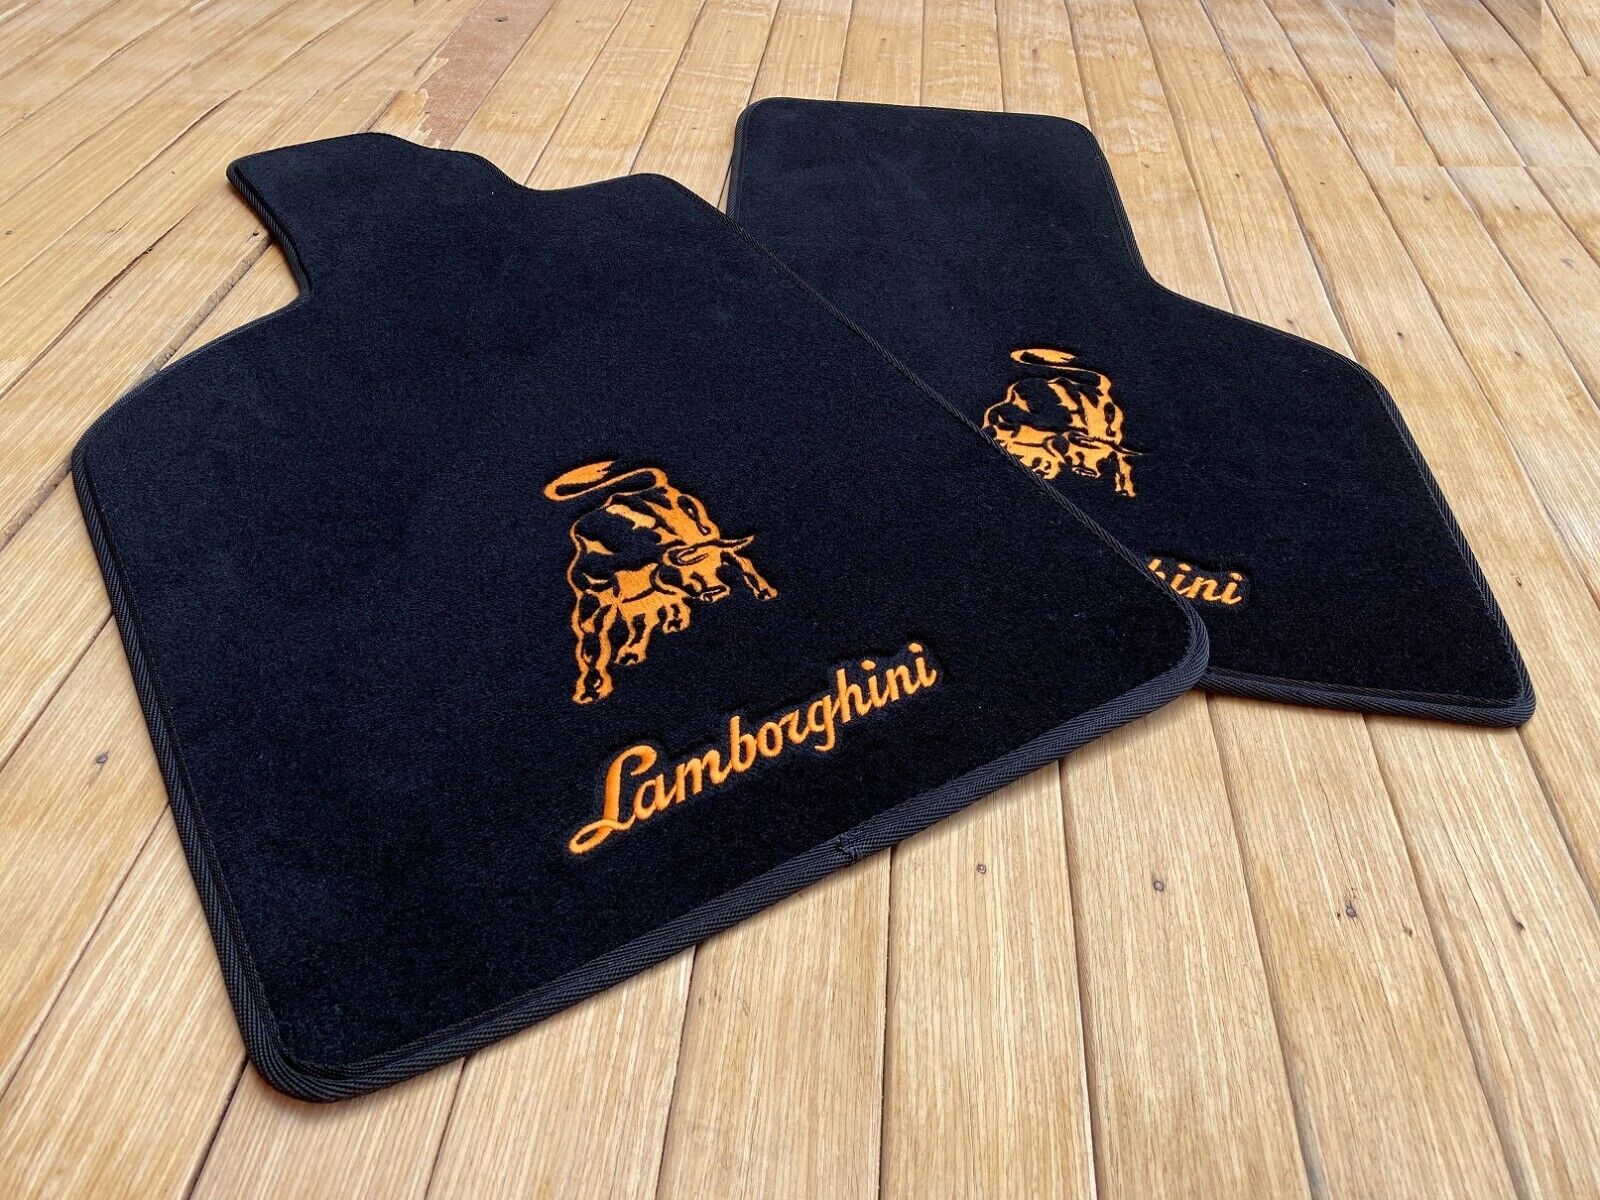 For Lamborghini Gallardo Floor mats carpet Black Orange letter 2pcs 2004-14  